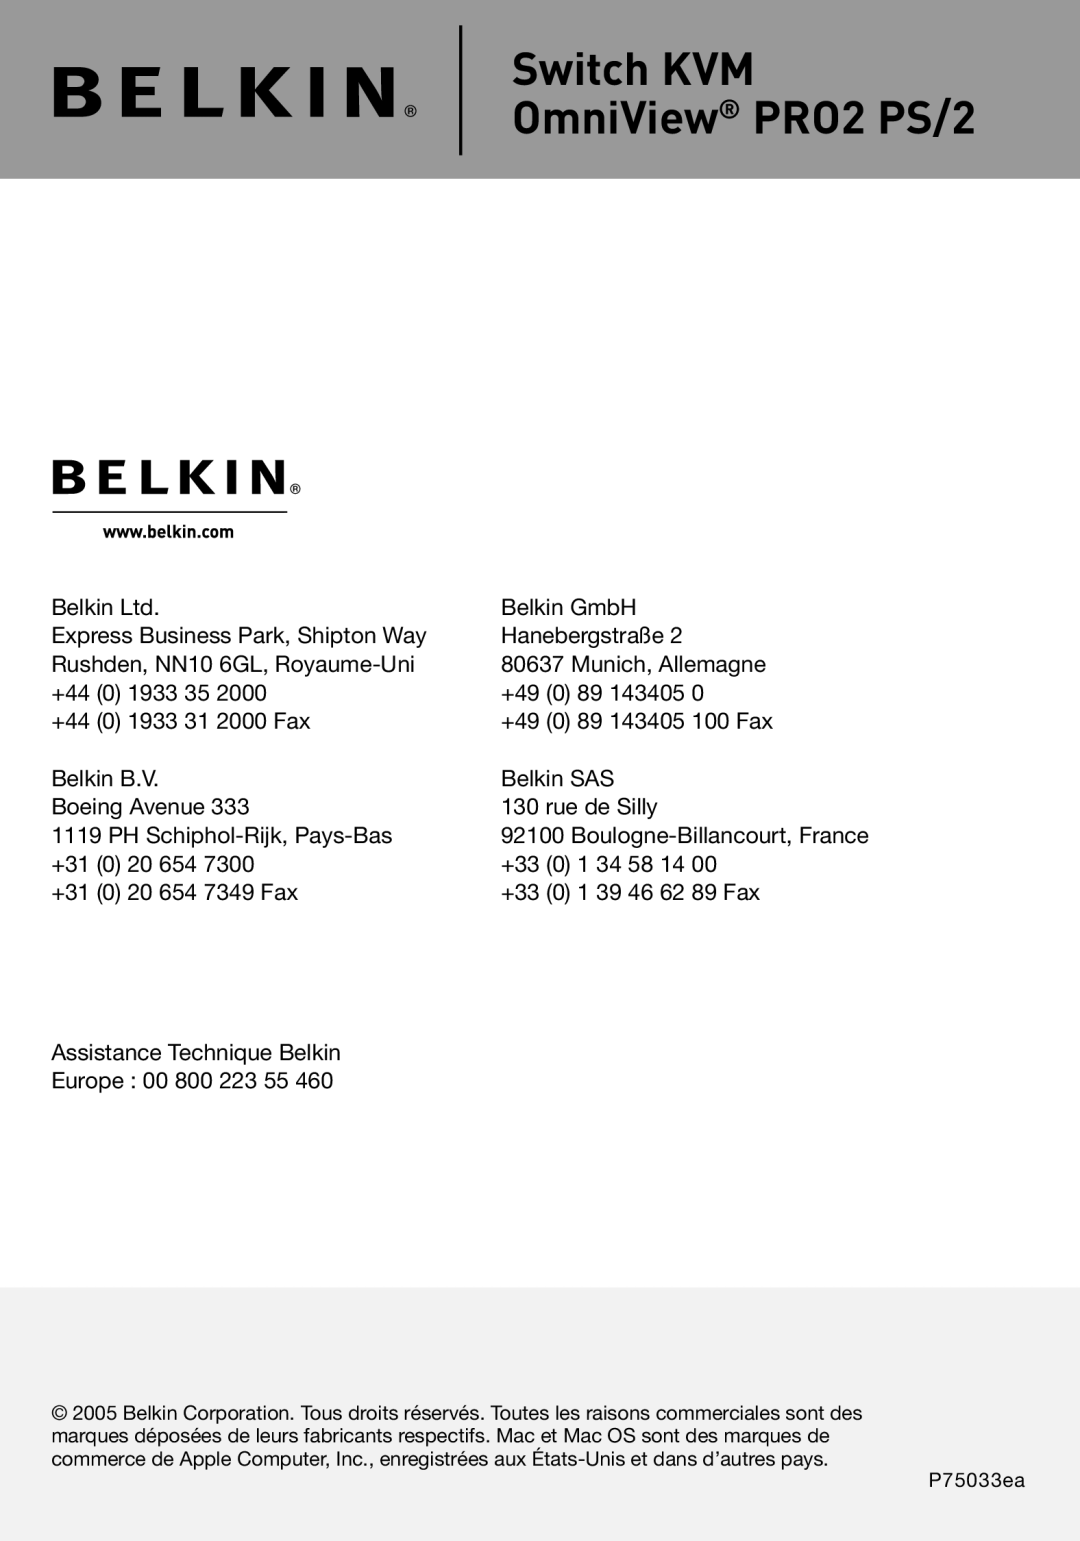 Belkin user manual Switch KVM OmniView PRO2 PS/2, Belkin GmbH 